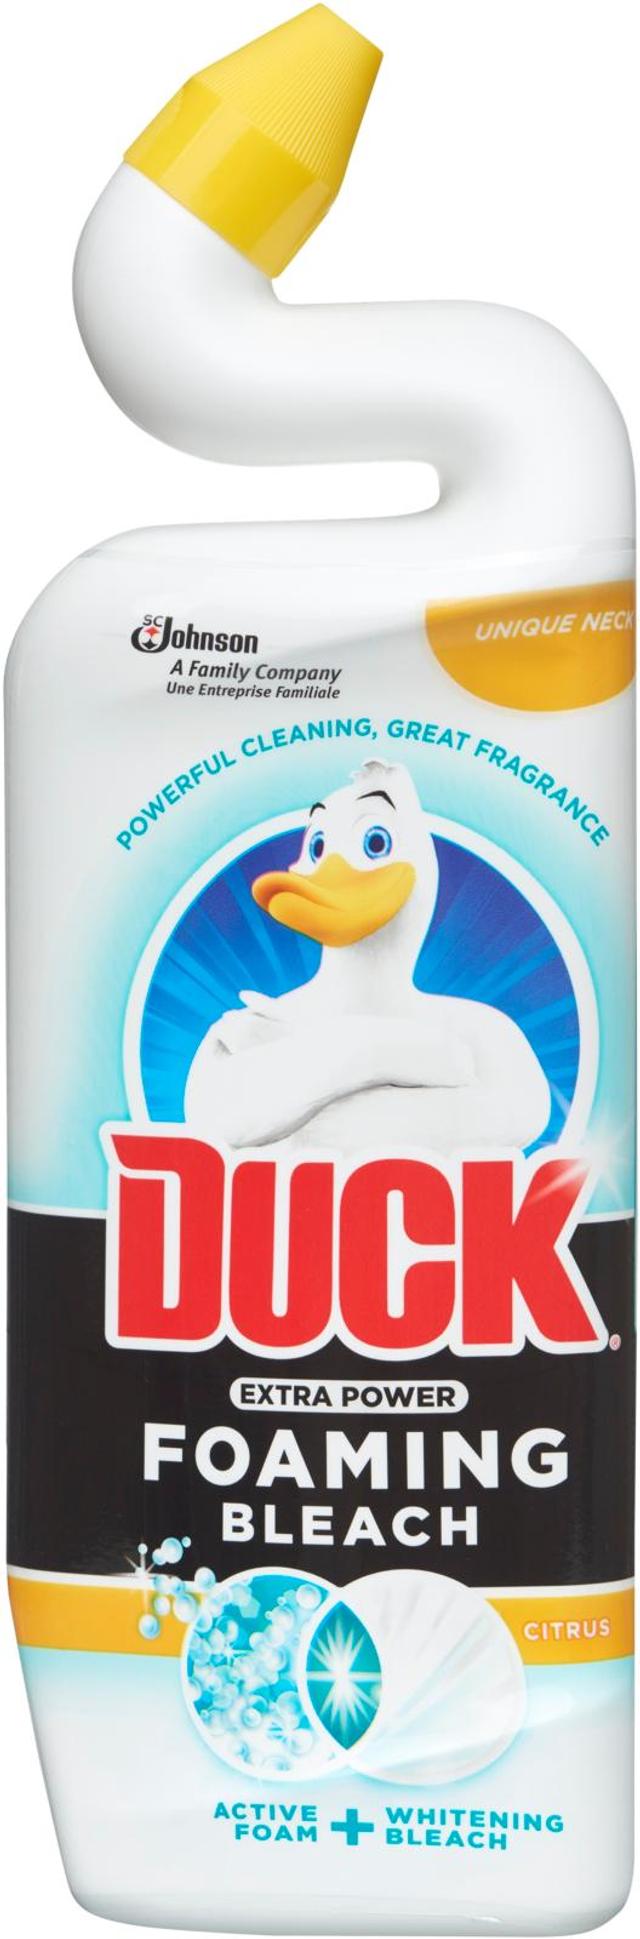 Duck 750ml Citrus vaahtoava & valkaiseva puhdistusaine